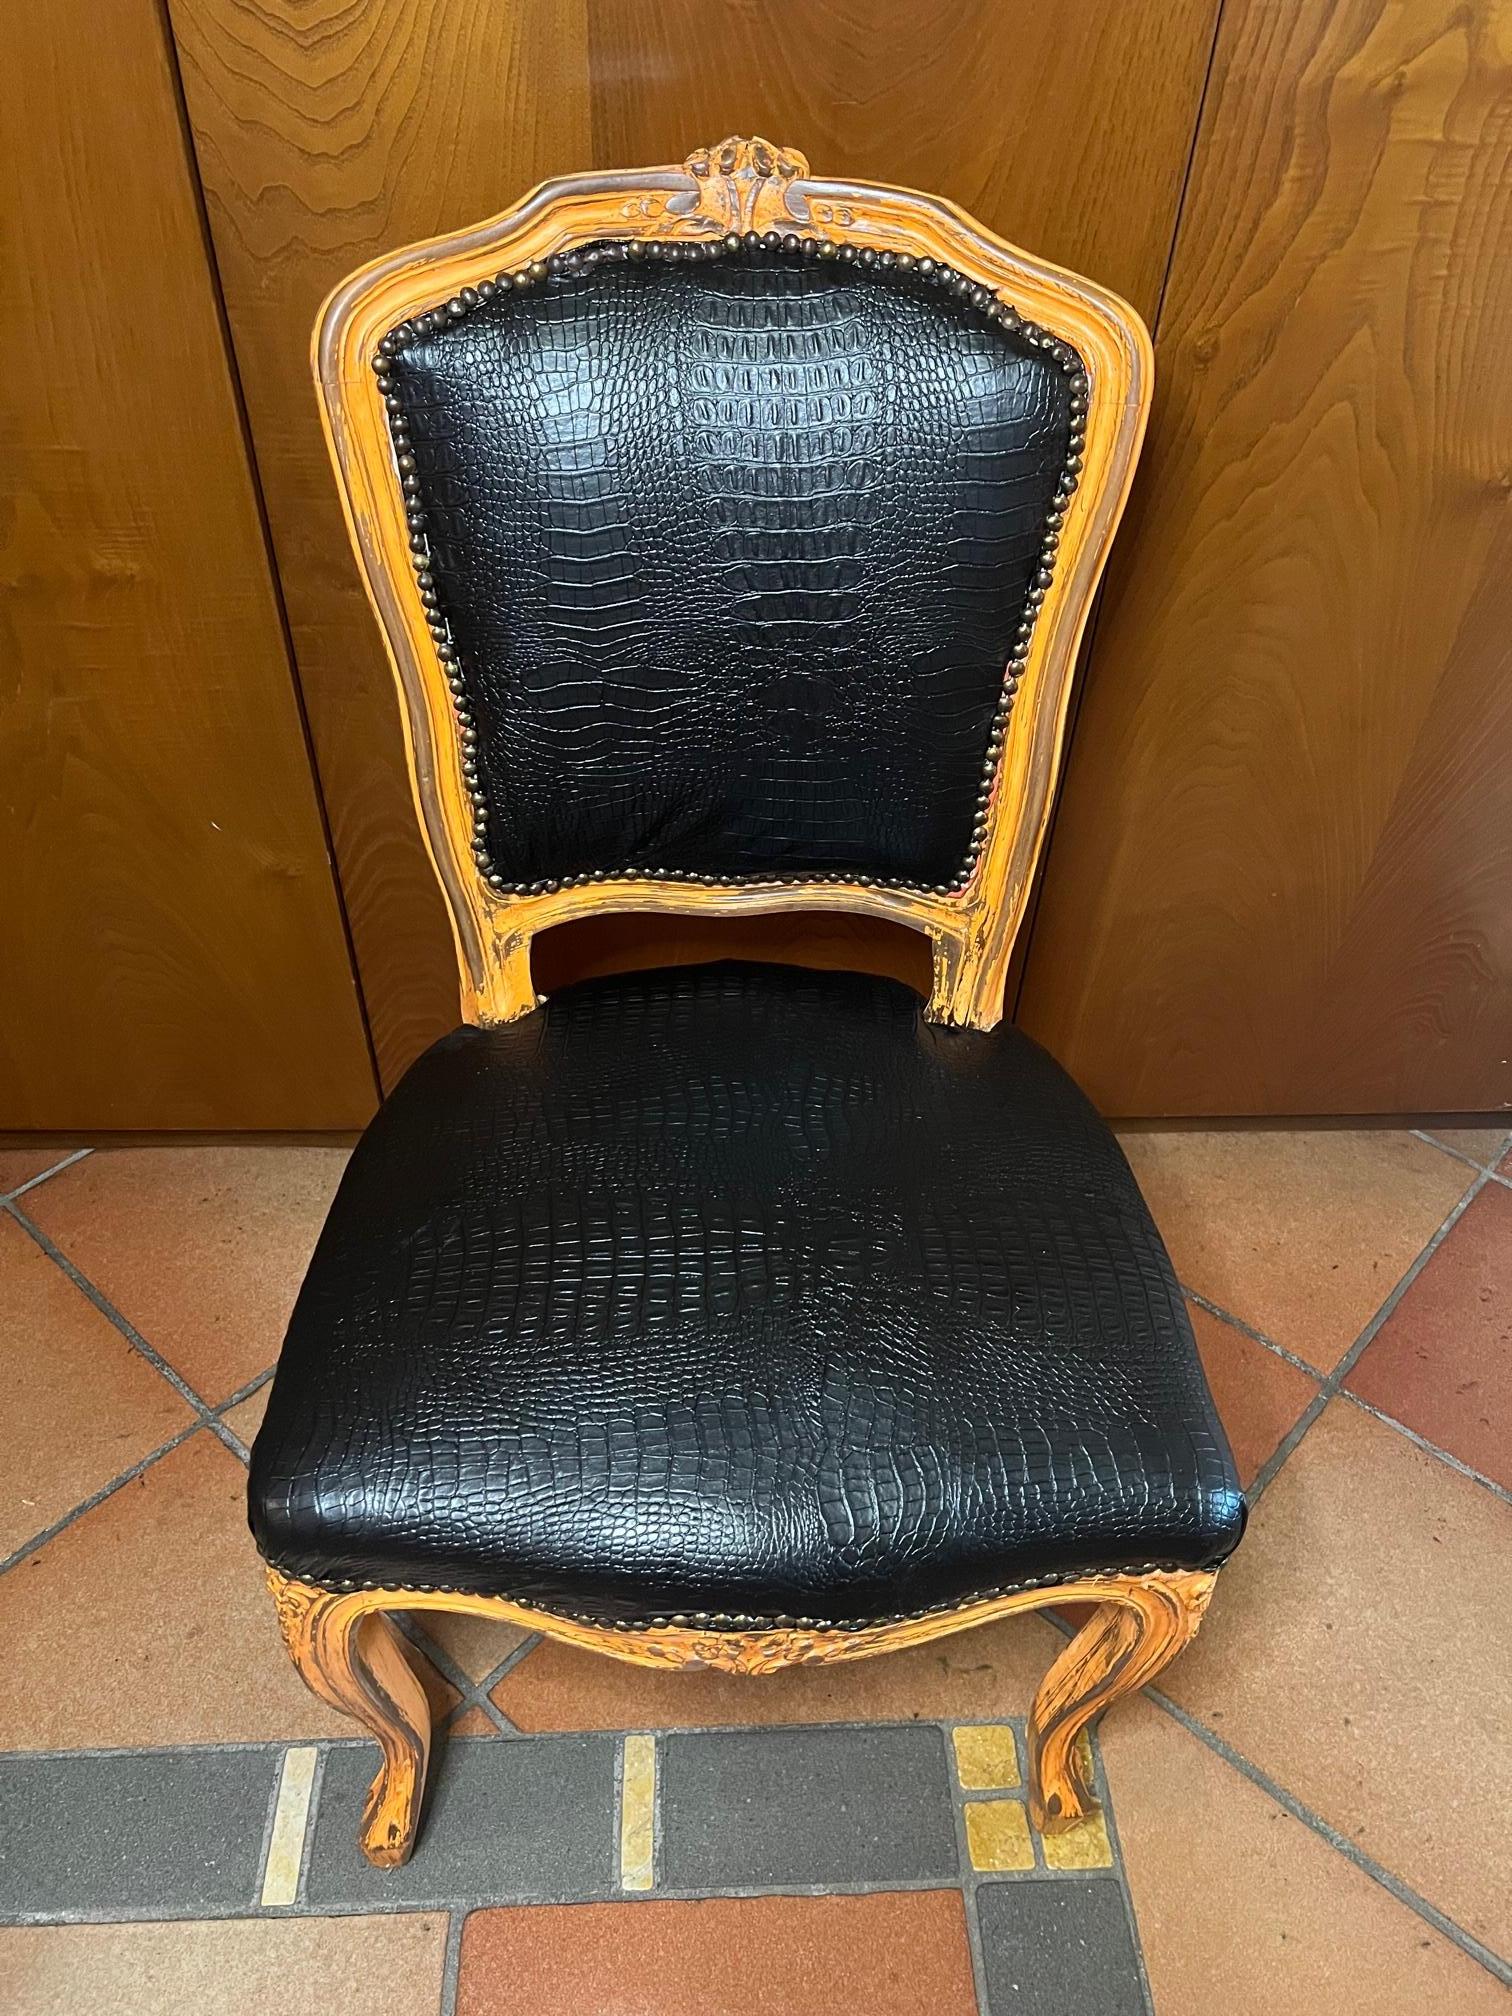 Italienischer Sessel mit Bezug aus schwarzem Krokodillederimitat, Struktur aus antikem gelb/rosafarbenem Buchenholz.
 Es ist sehr elegant und bequem.
Es stammt aus einem alten Geschäft in der Gegend von Florenz in der Toskana.
Wie auf den Fotos